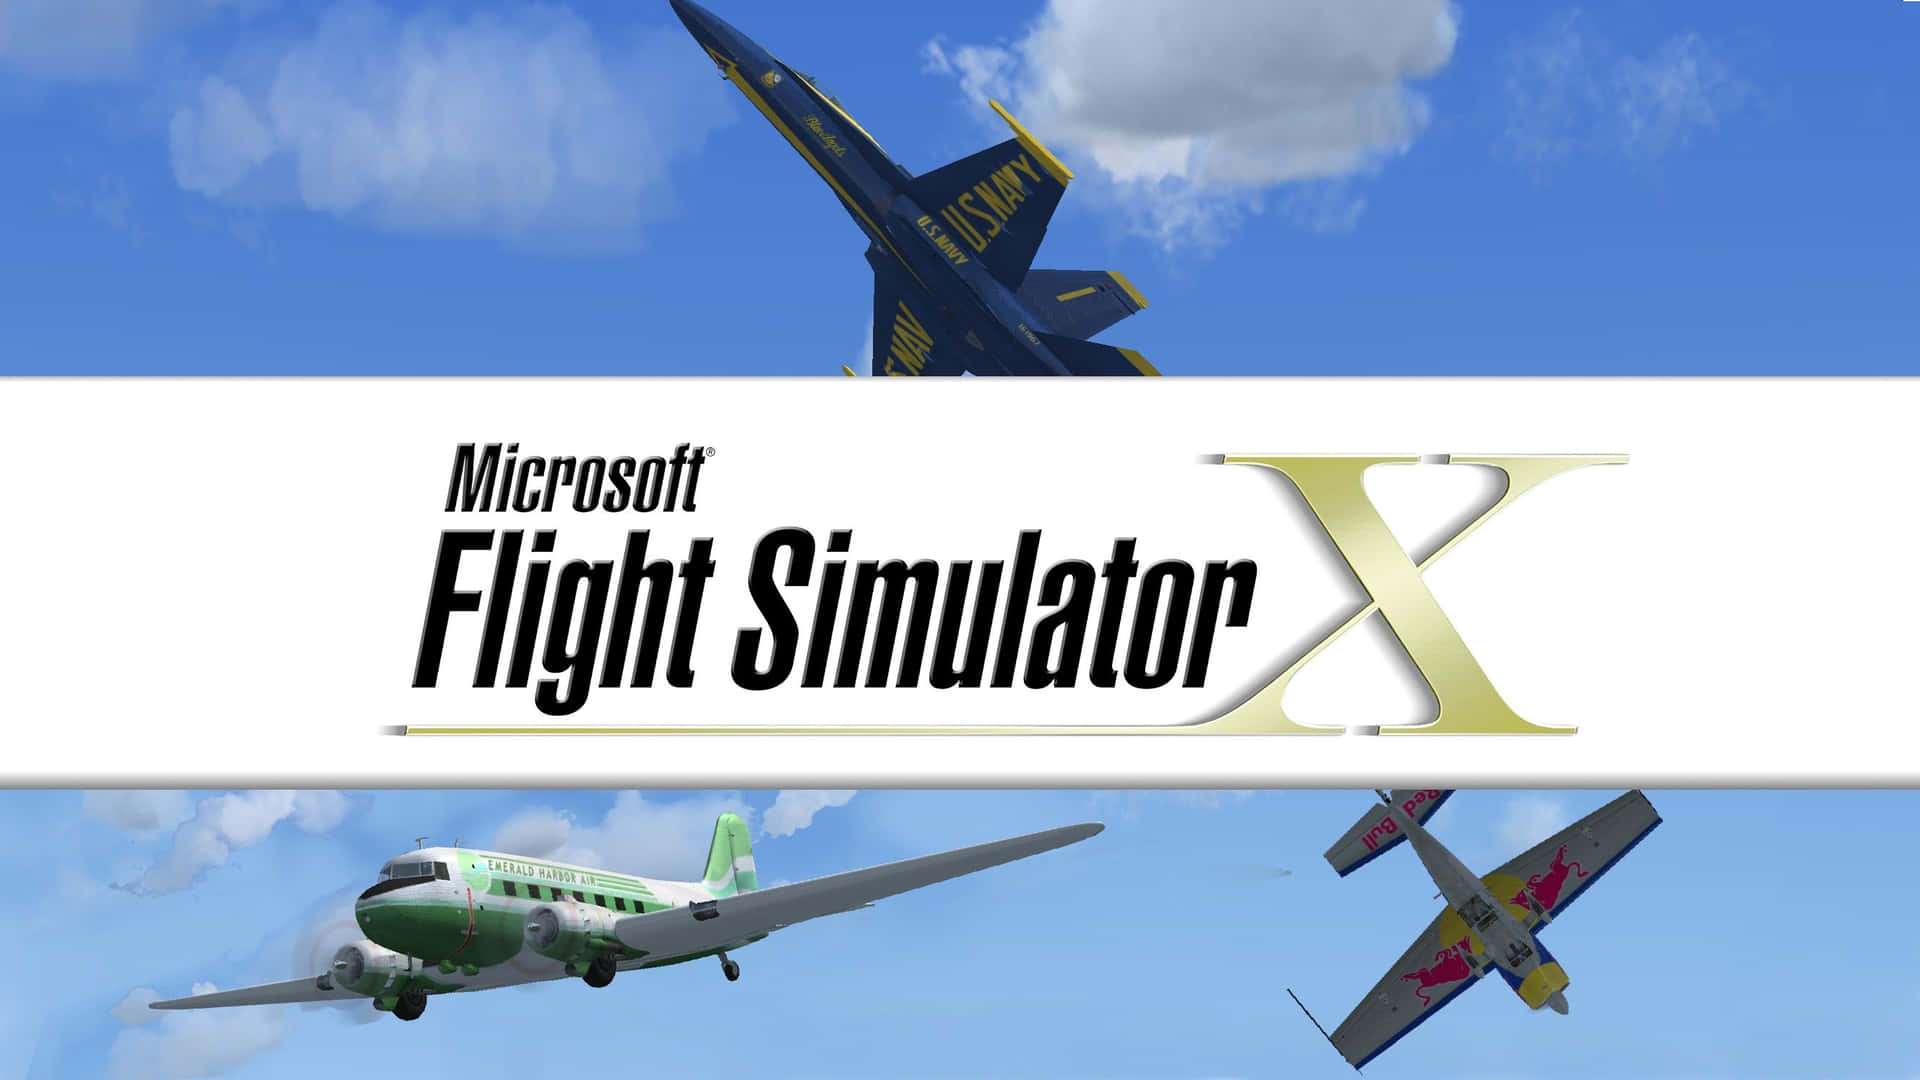 Erobernsie Den Himmel Mit Microsoft Flight Simulator.